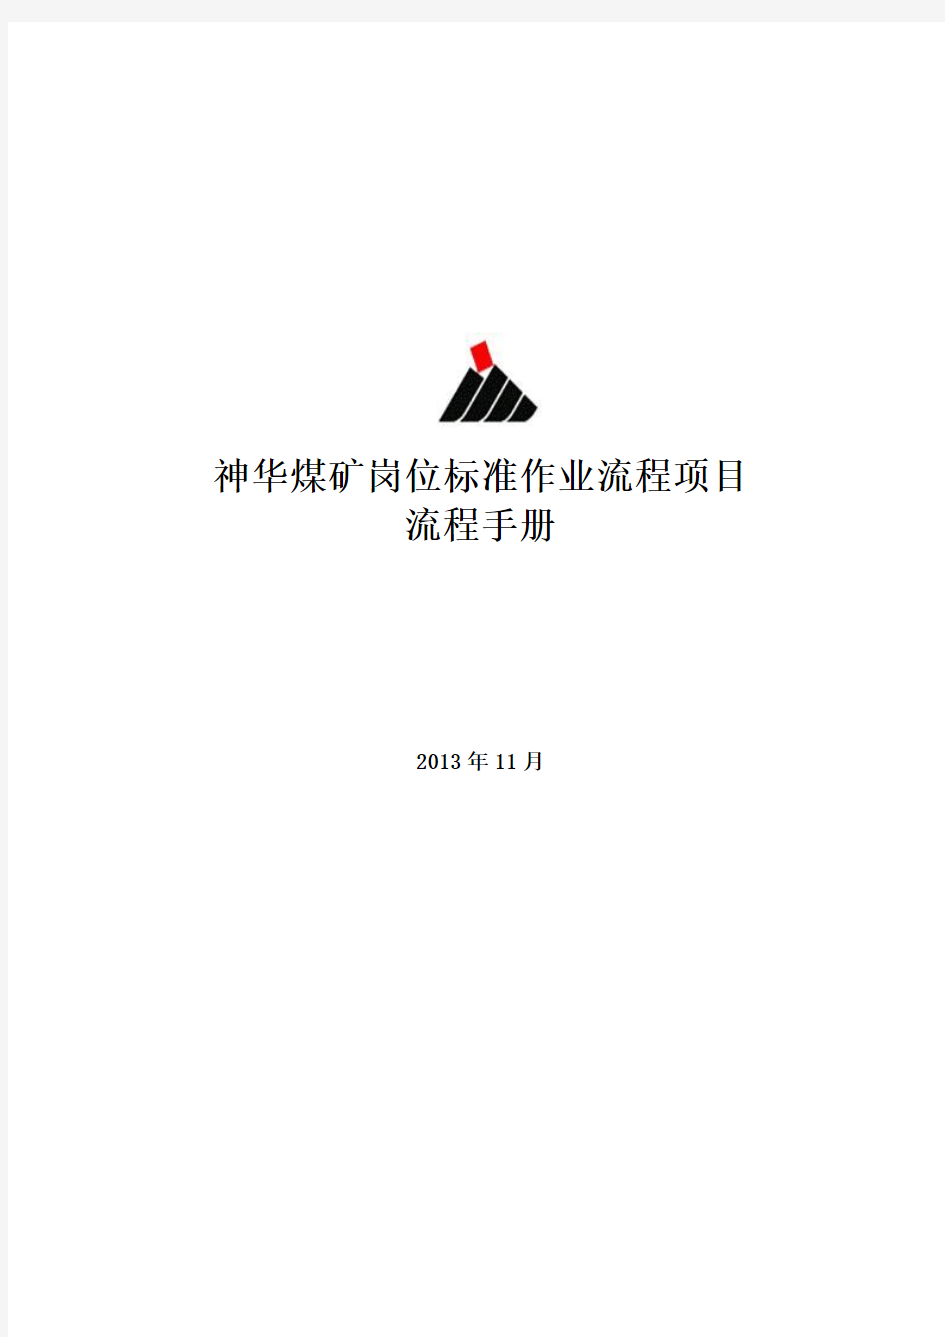 神华煤矿岗位标准作业流程项目流程手册